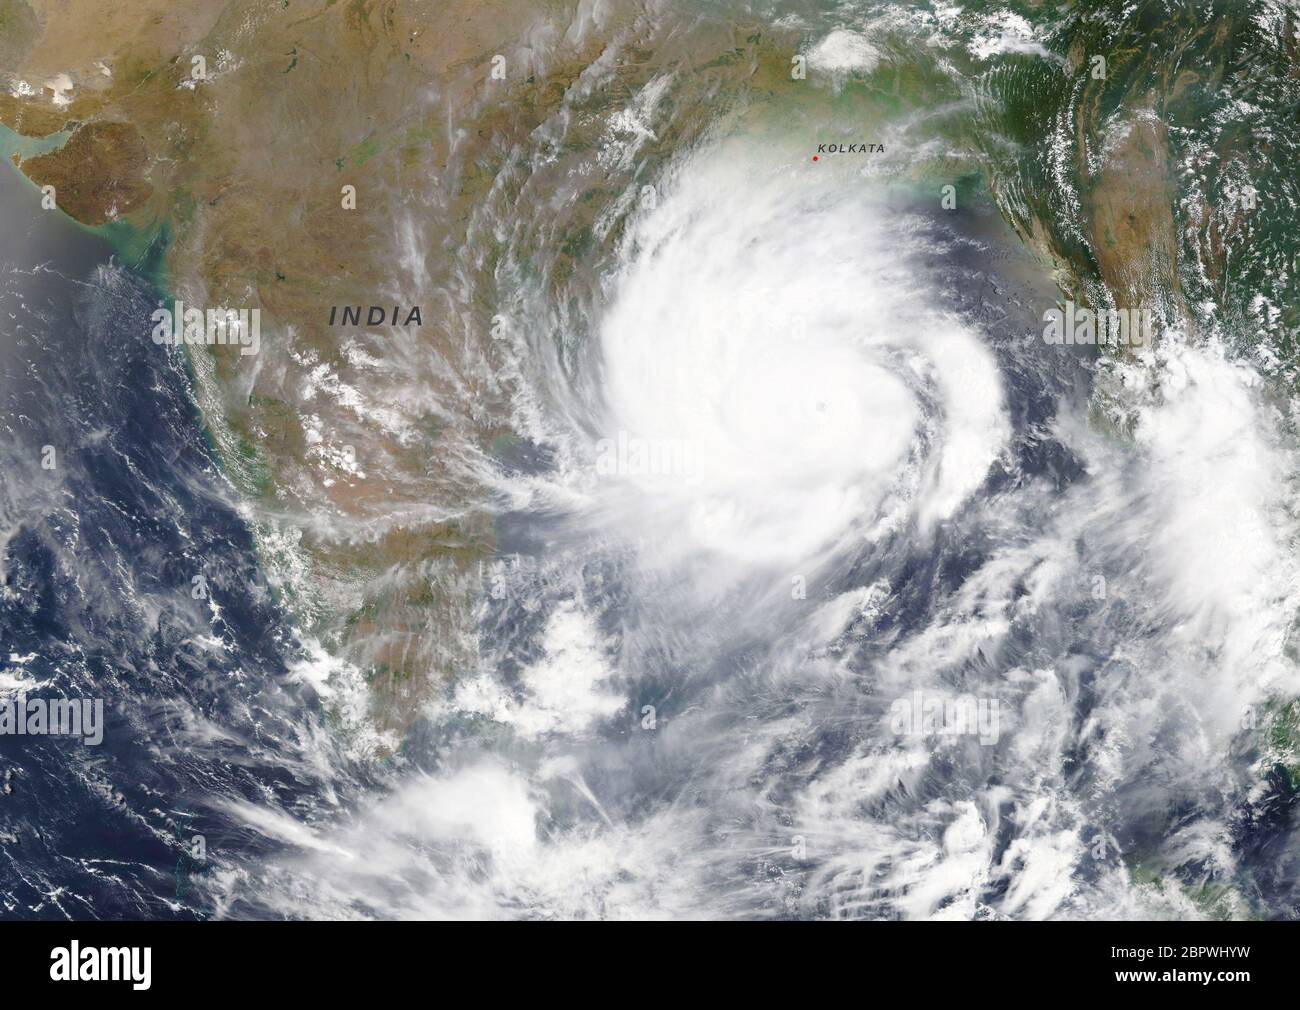 Zyklon Amphan auf dem Weg nach Kolkata, Indien und Bangladeash im Mai 2020 - Elemente dieses Bildes, die von der NASA bereitgestellt wurden Stockfoto